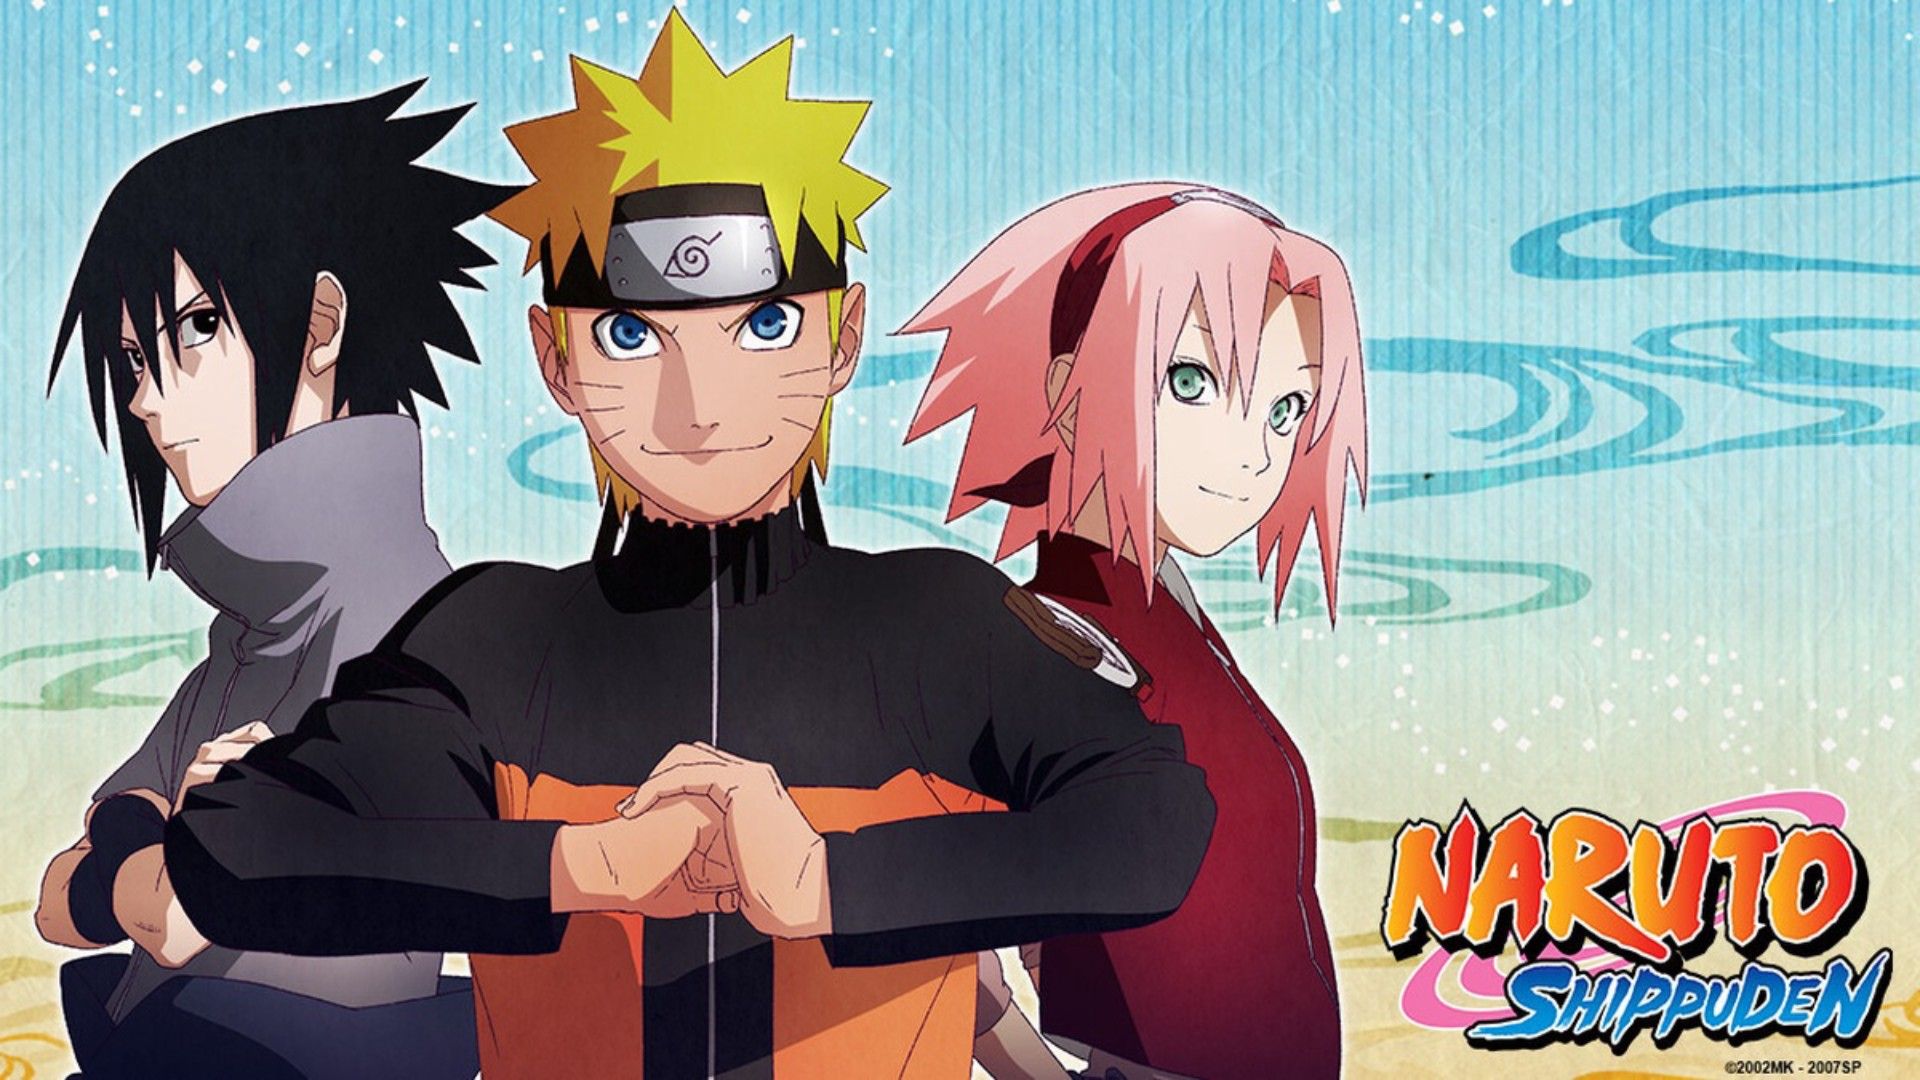 Naruto Shippuden Episodes 398-448 English Dubbed / Japanese